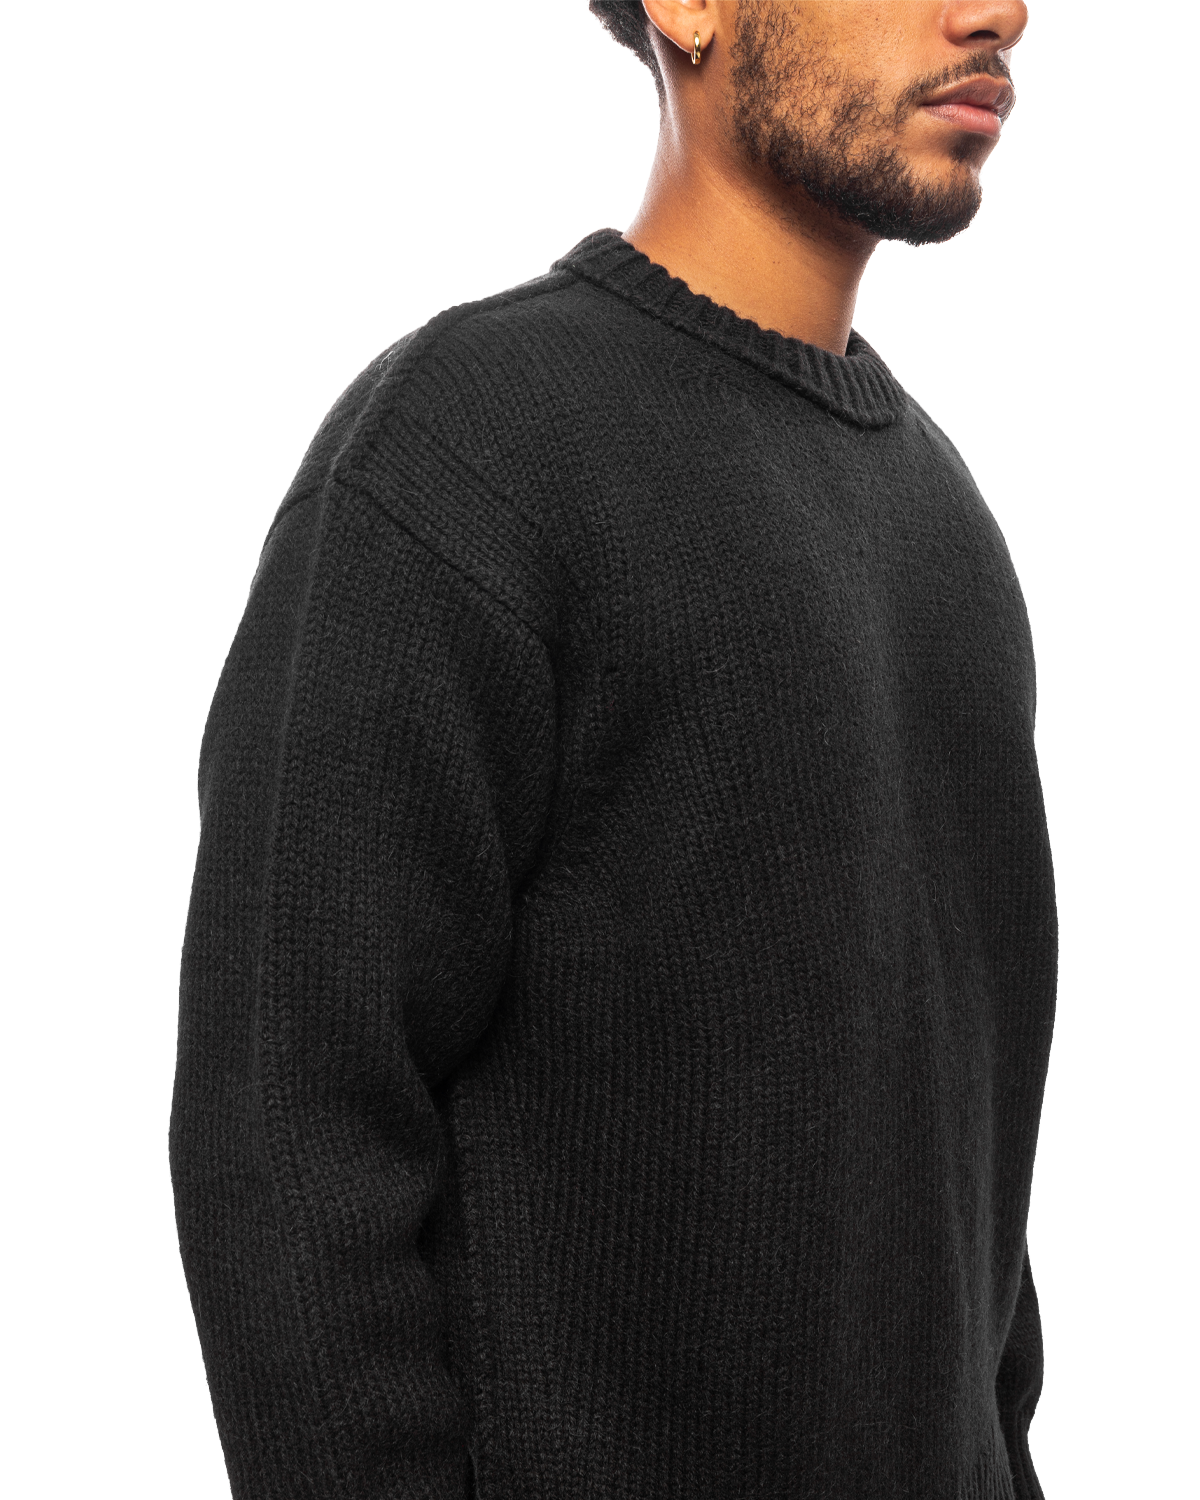 Boxy Sweater Black